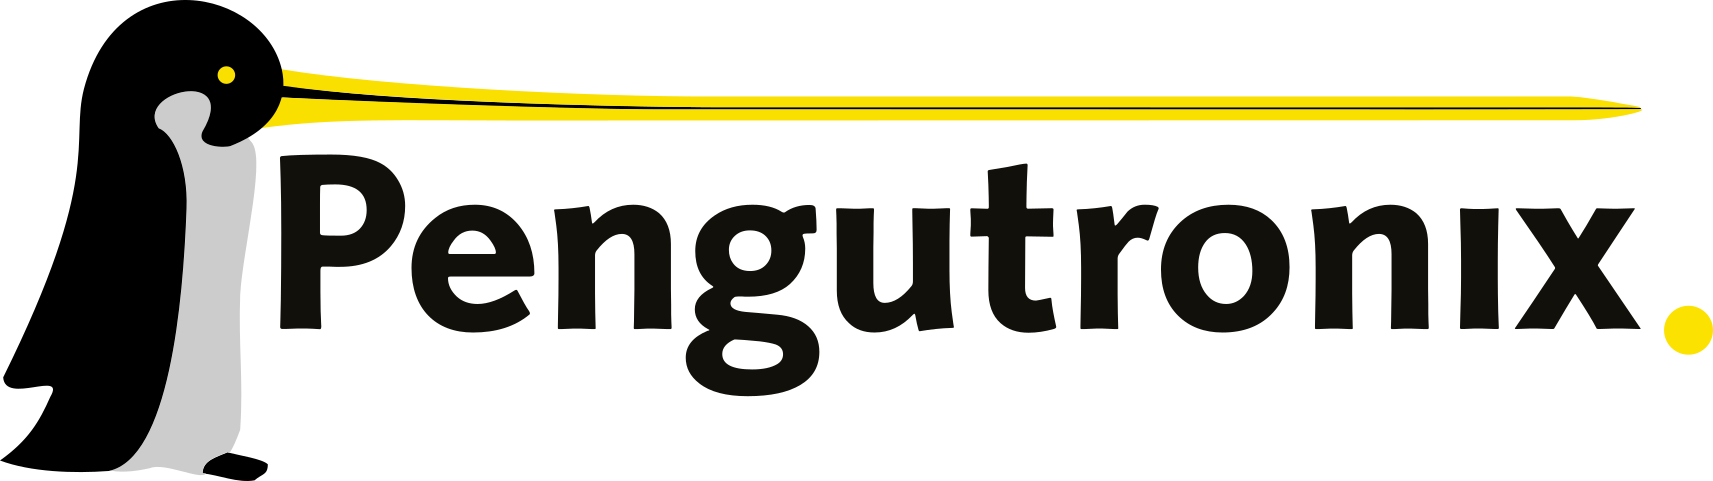 logo of Pengutronix